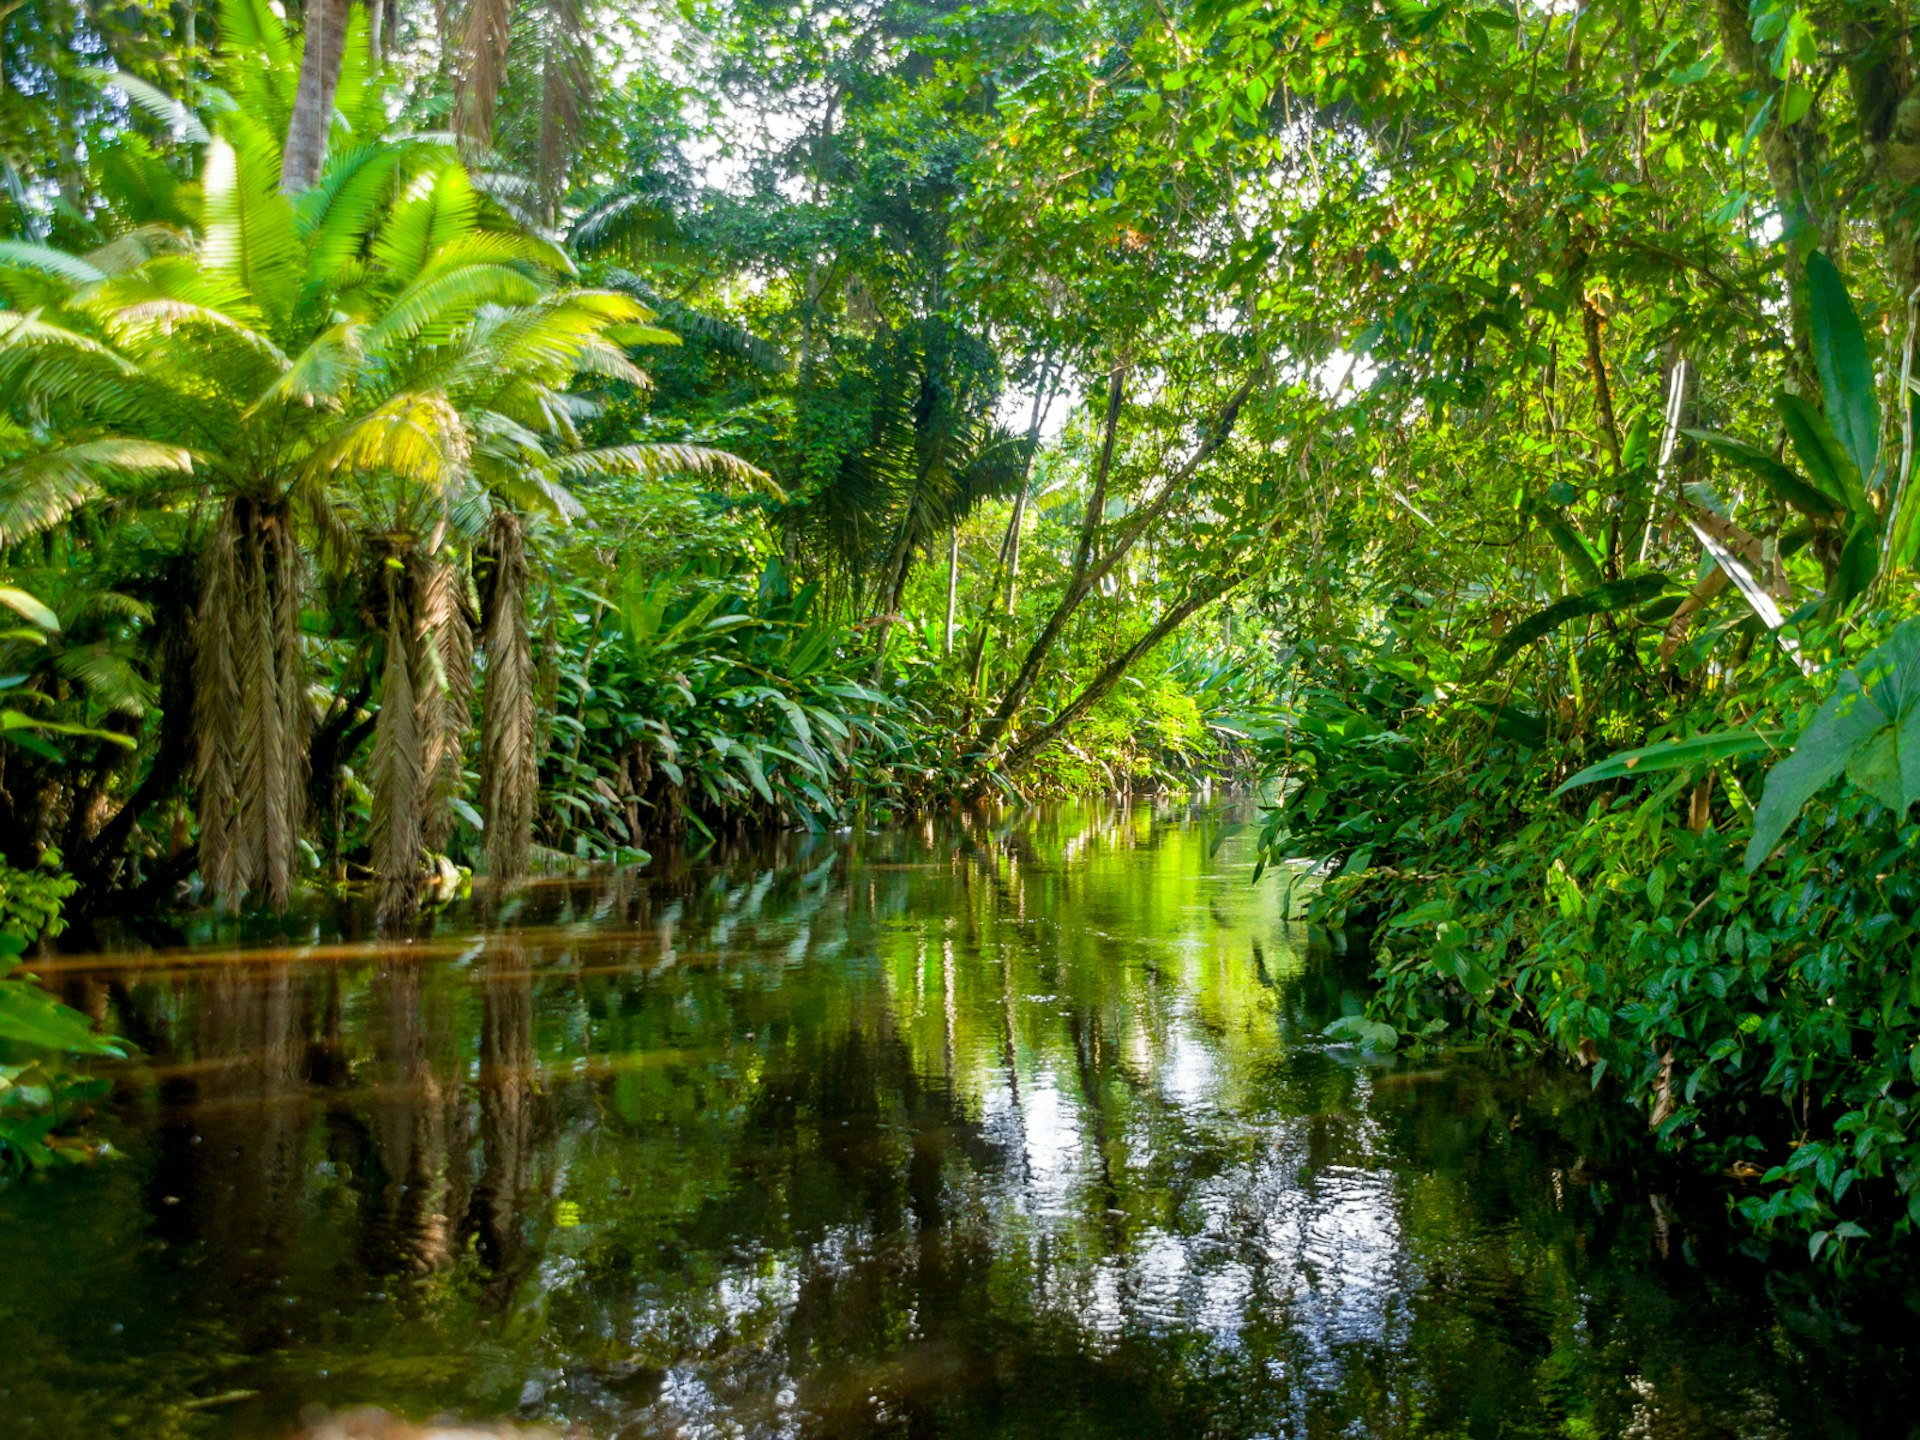 A river running through dense rainforest in the Amazon region